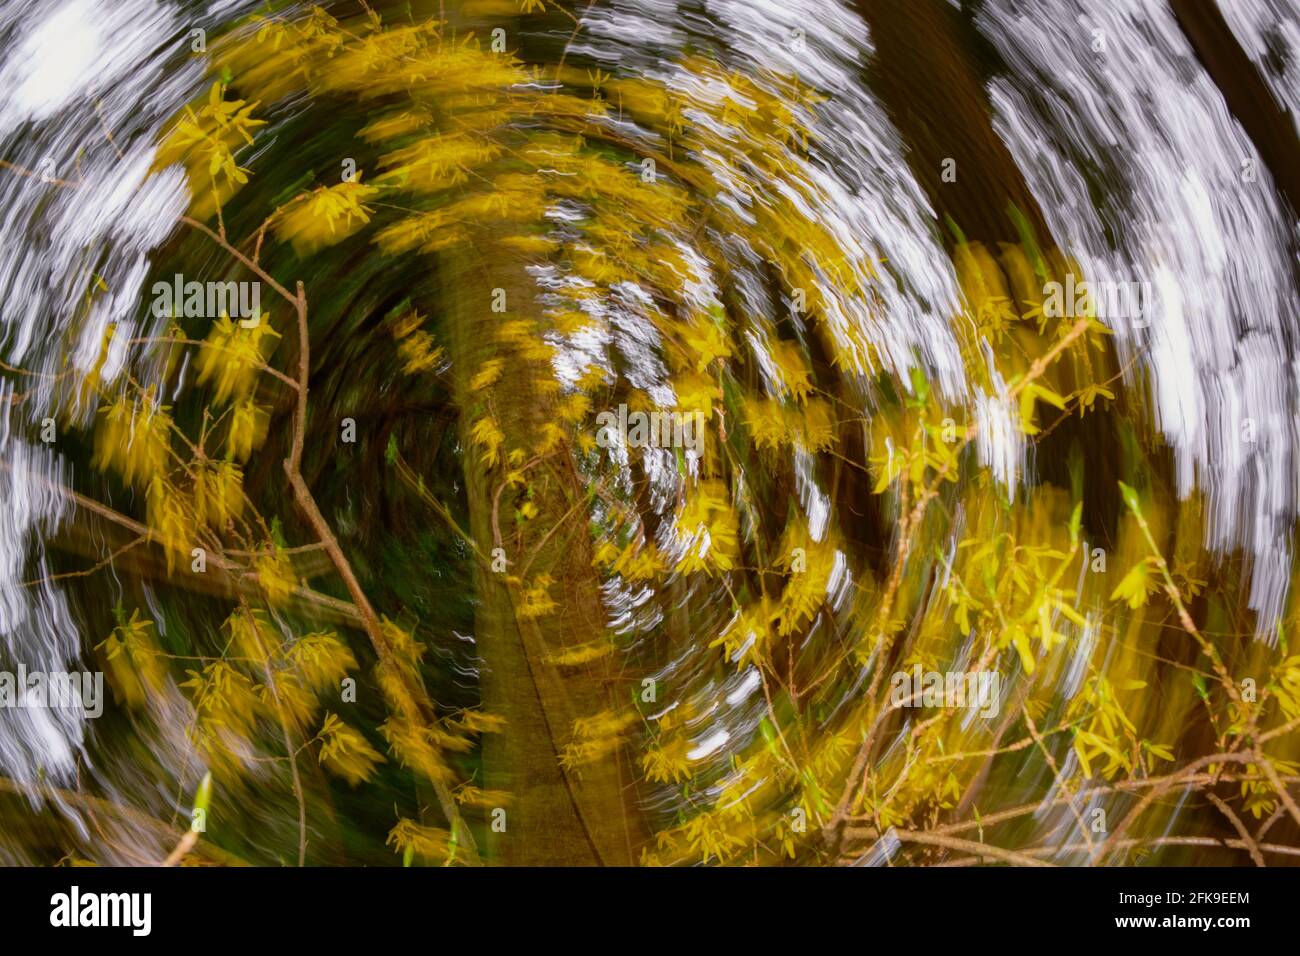 ICM circular (movimiento intencional de la cámara) crea una espiral de flores forsythia amarillas con un casi estacionario árbol al final del vórtice Foto de stock